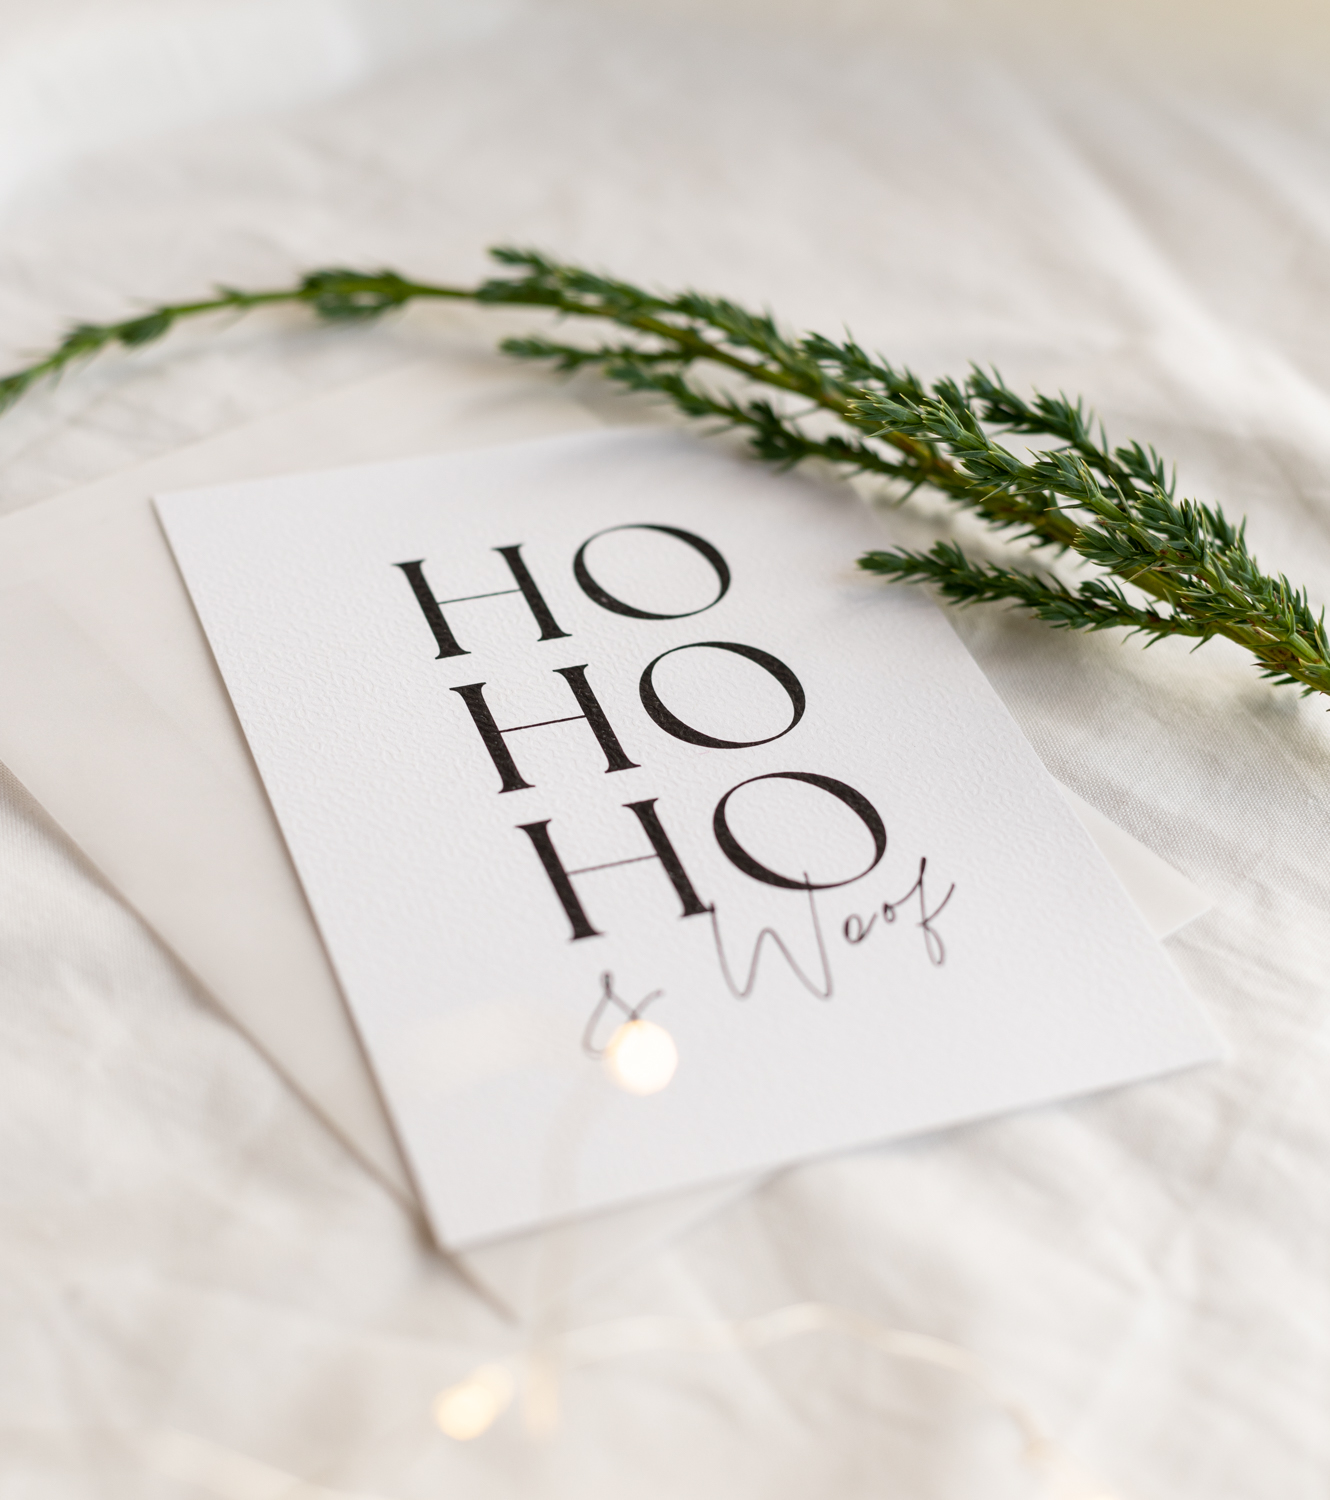 Weisse Weihnachtskarte mit transparentem Couvert Hohoho und Woof